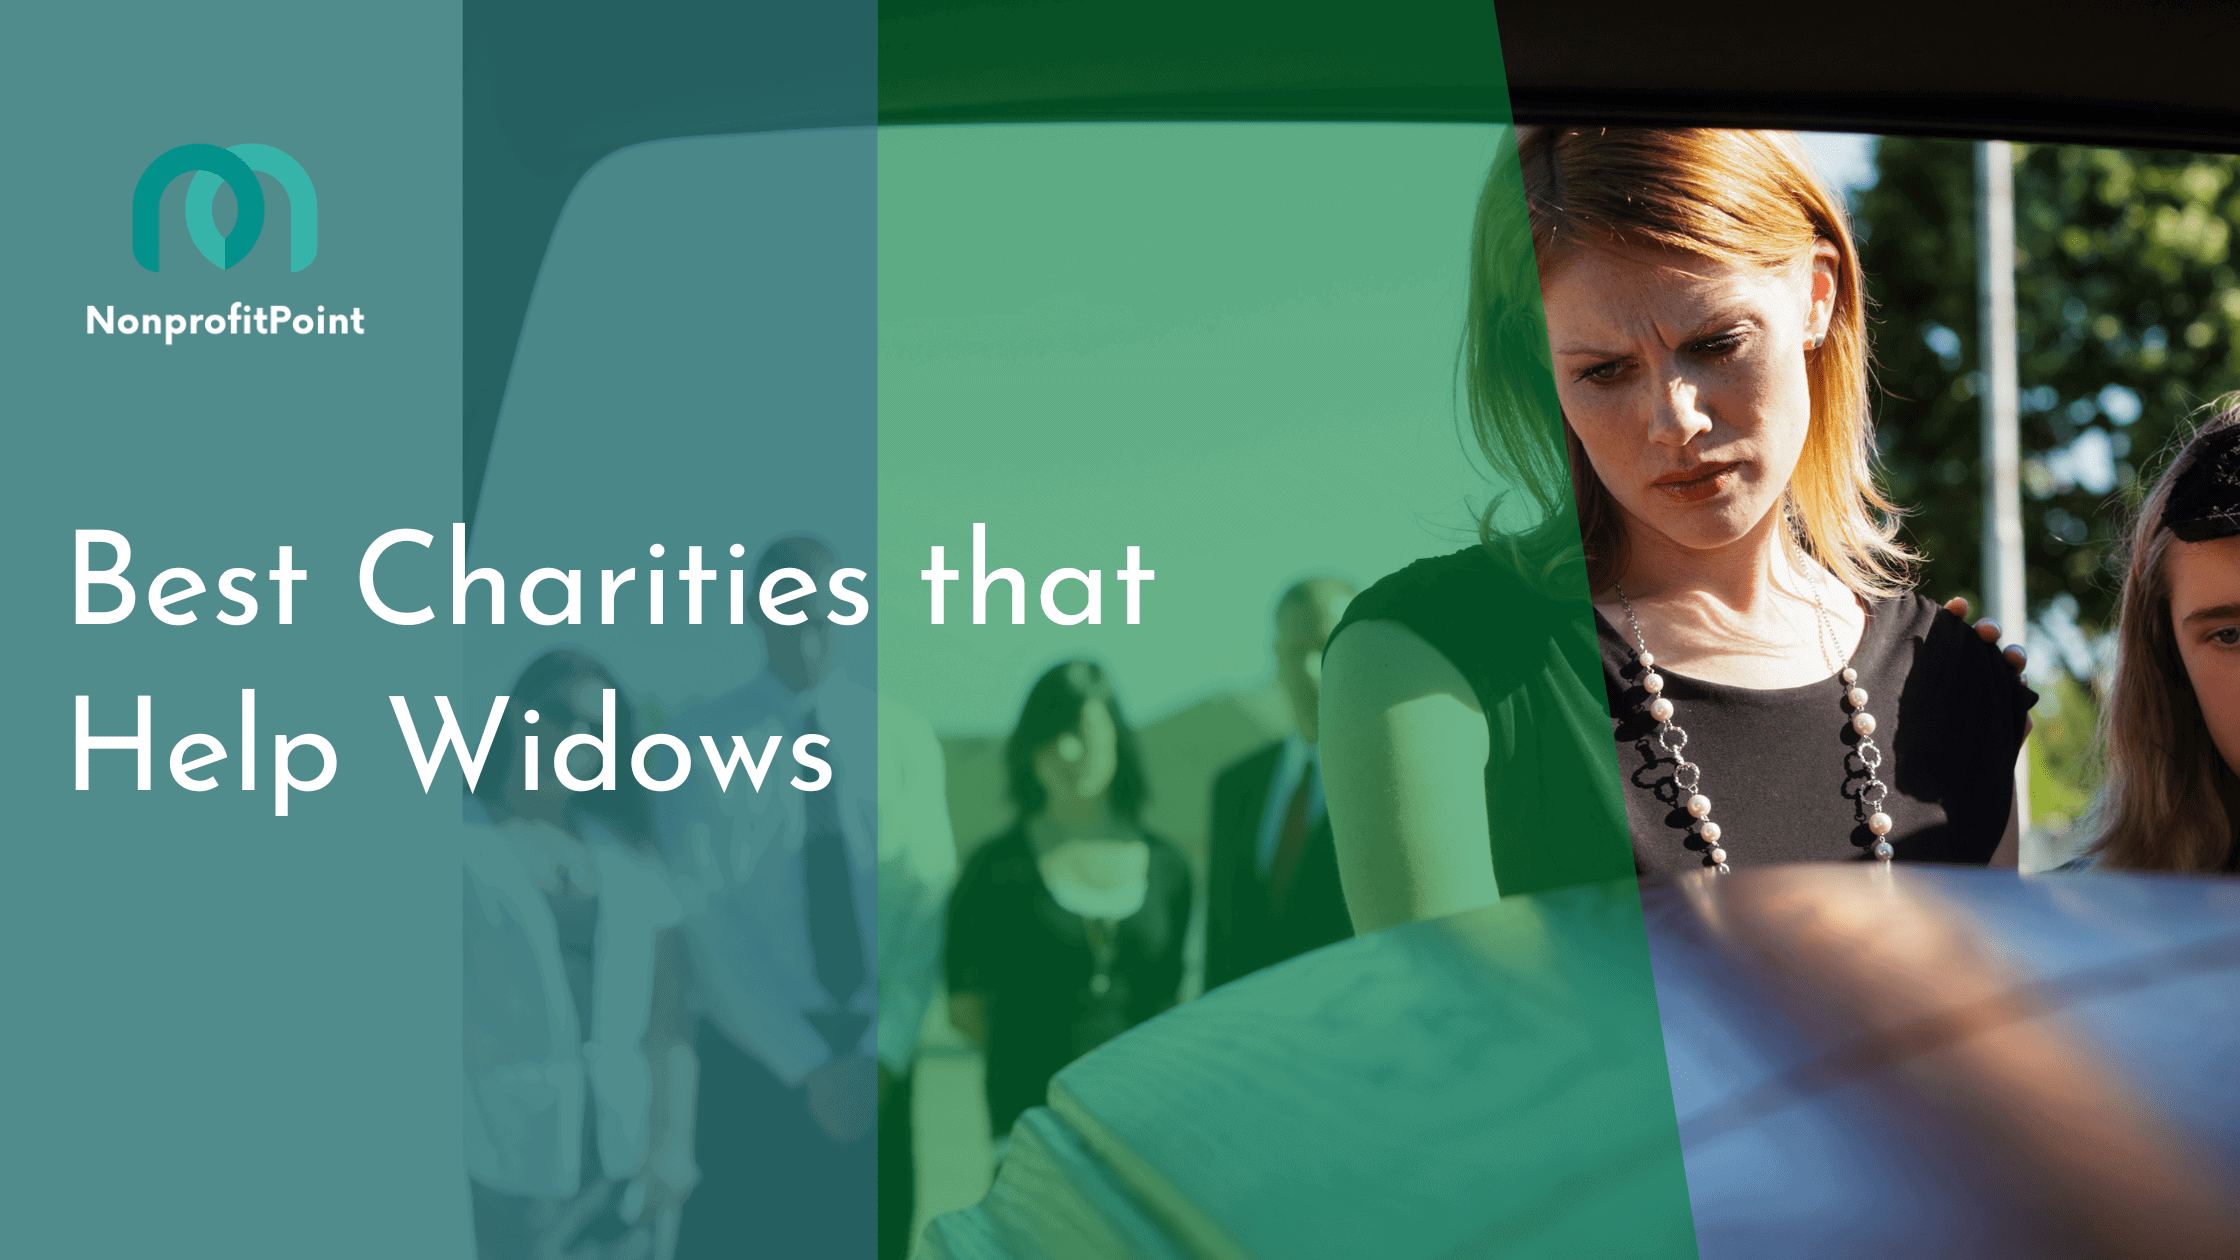 Best Charities that Help Widows